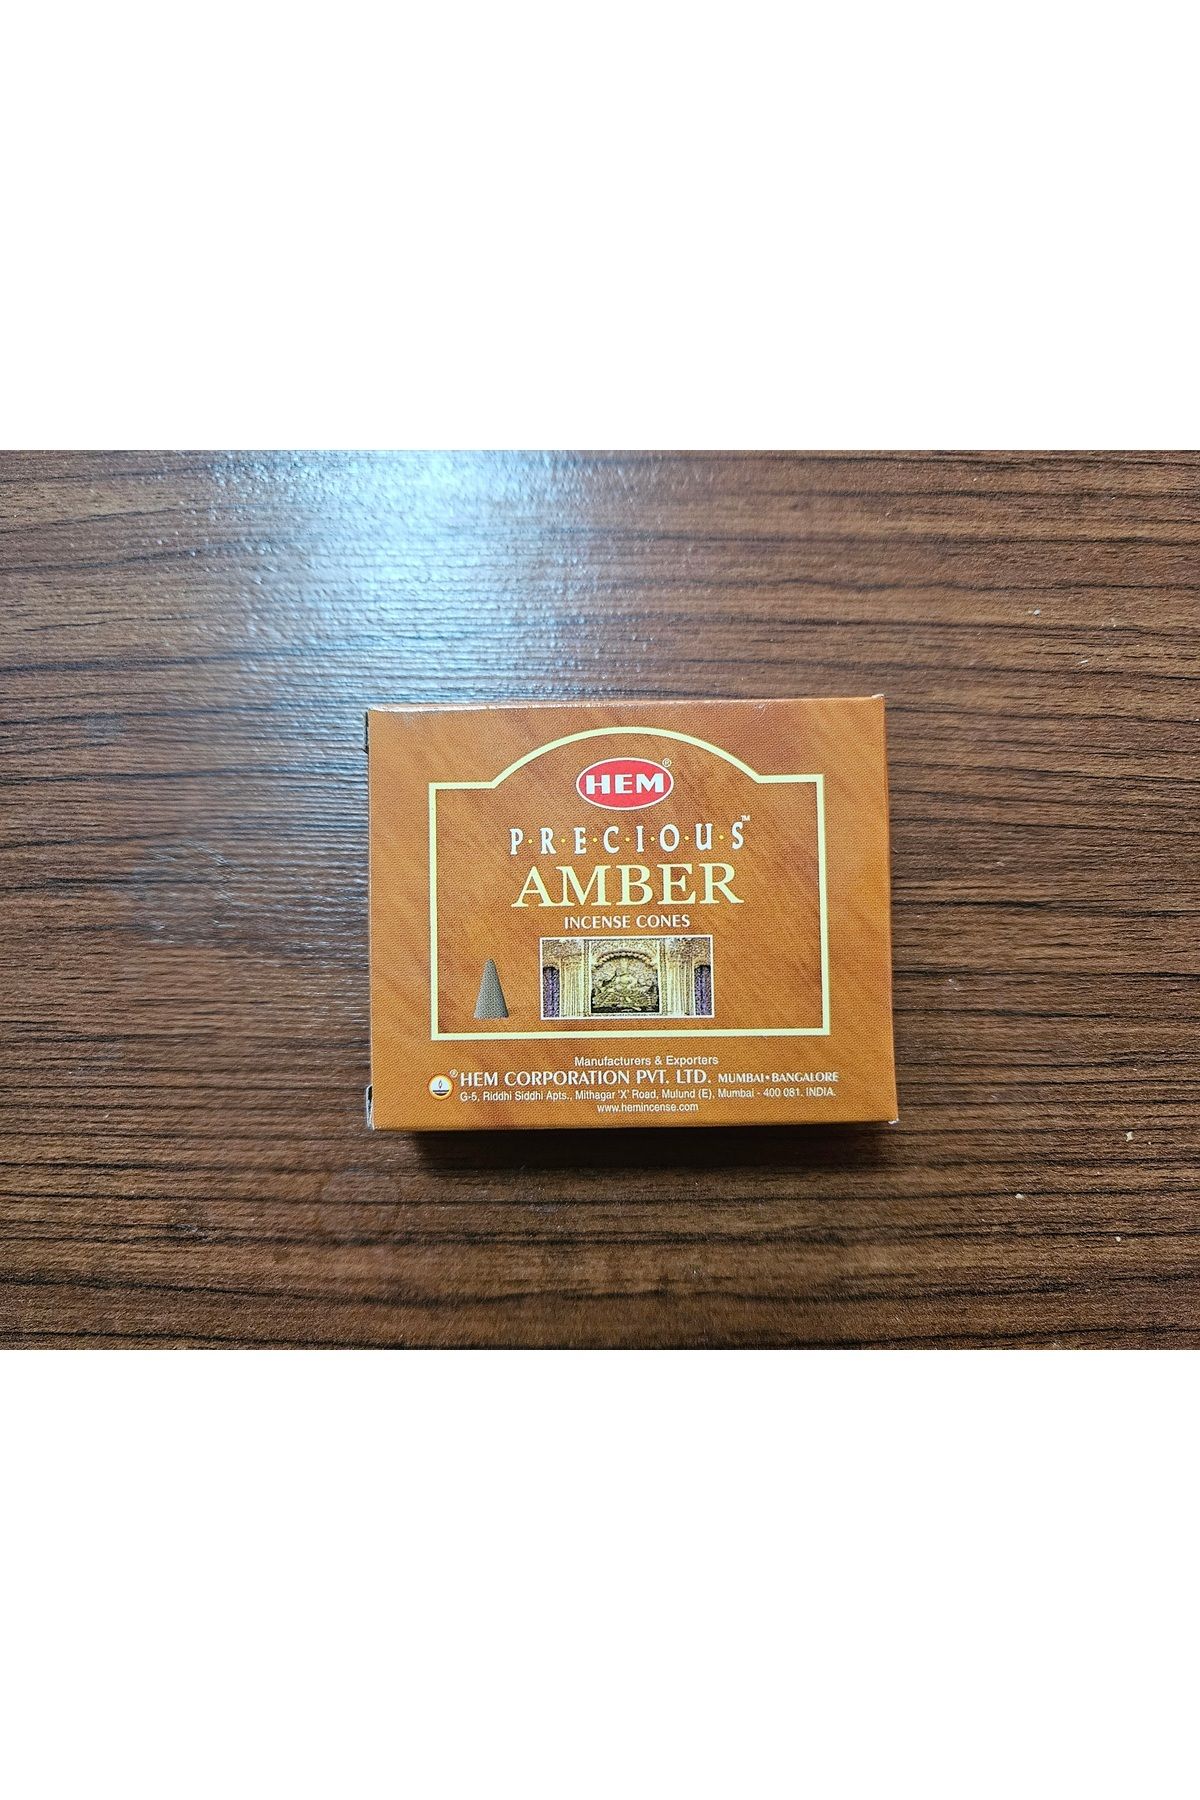 Hem Tütsü10 Adet Amber ( Misk) Aroması Konik Tütsü